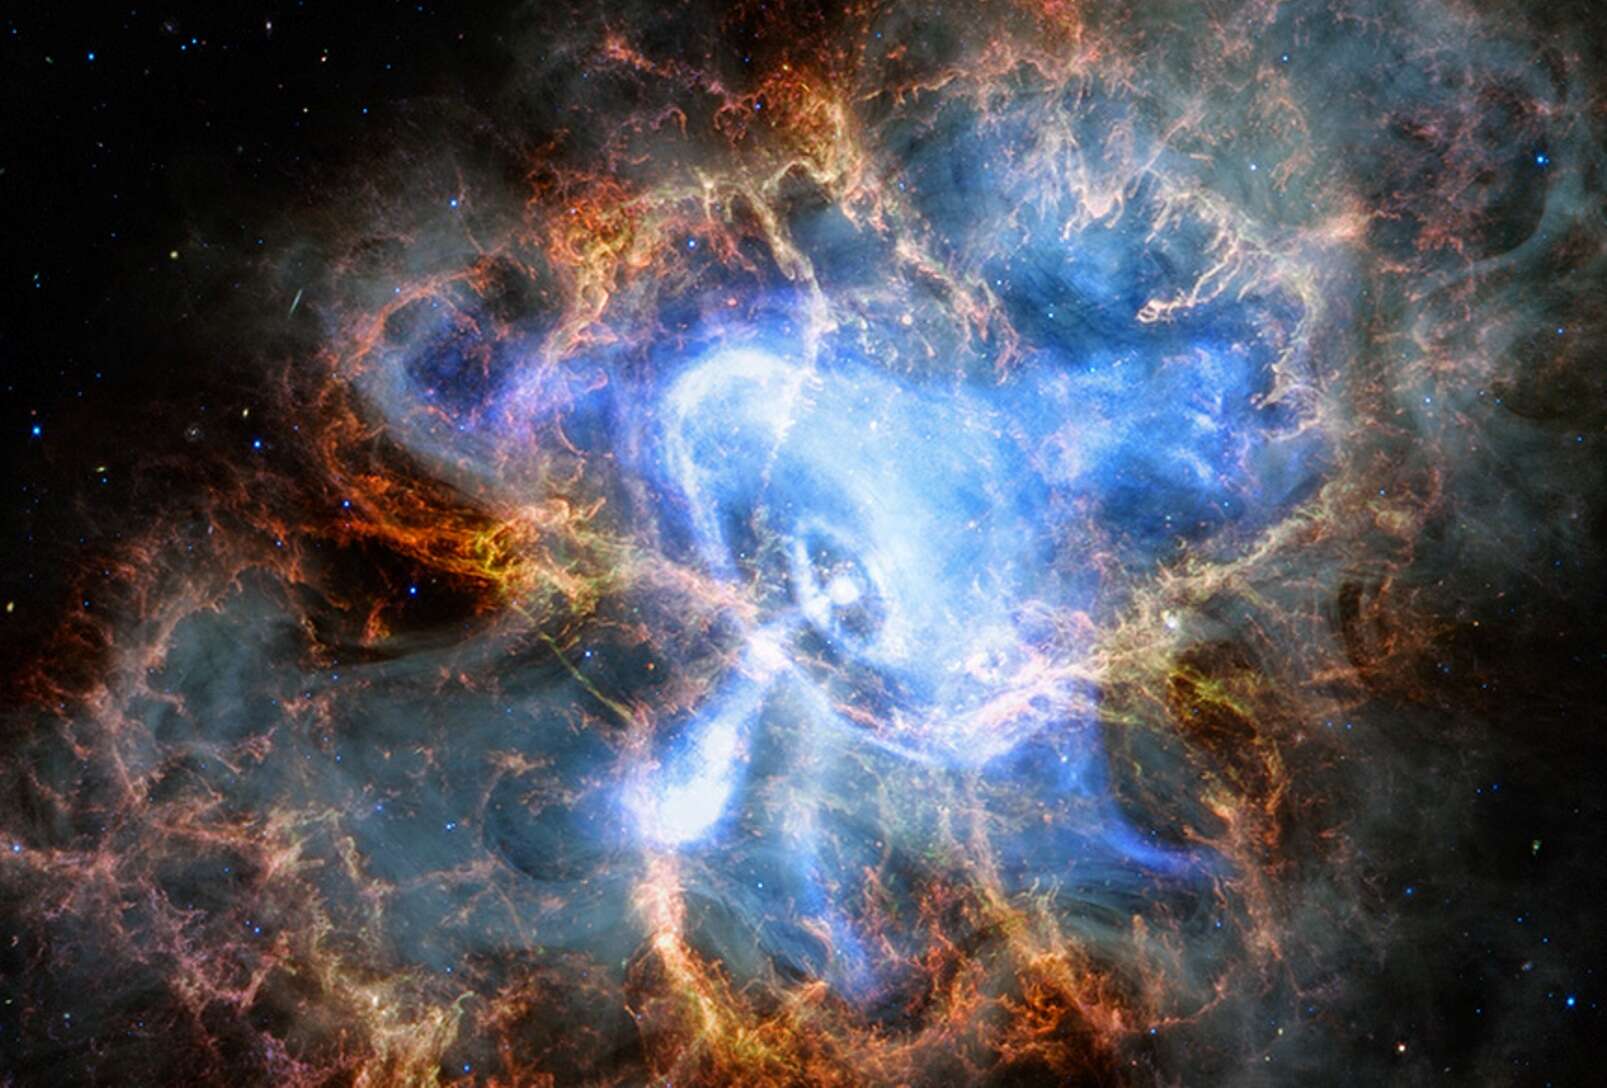 NASA showed breathtaking videos of supernova explosions